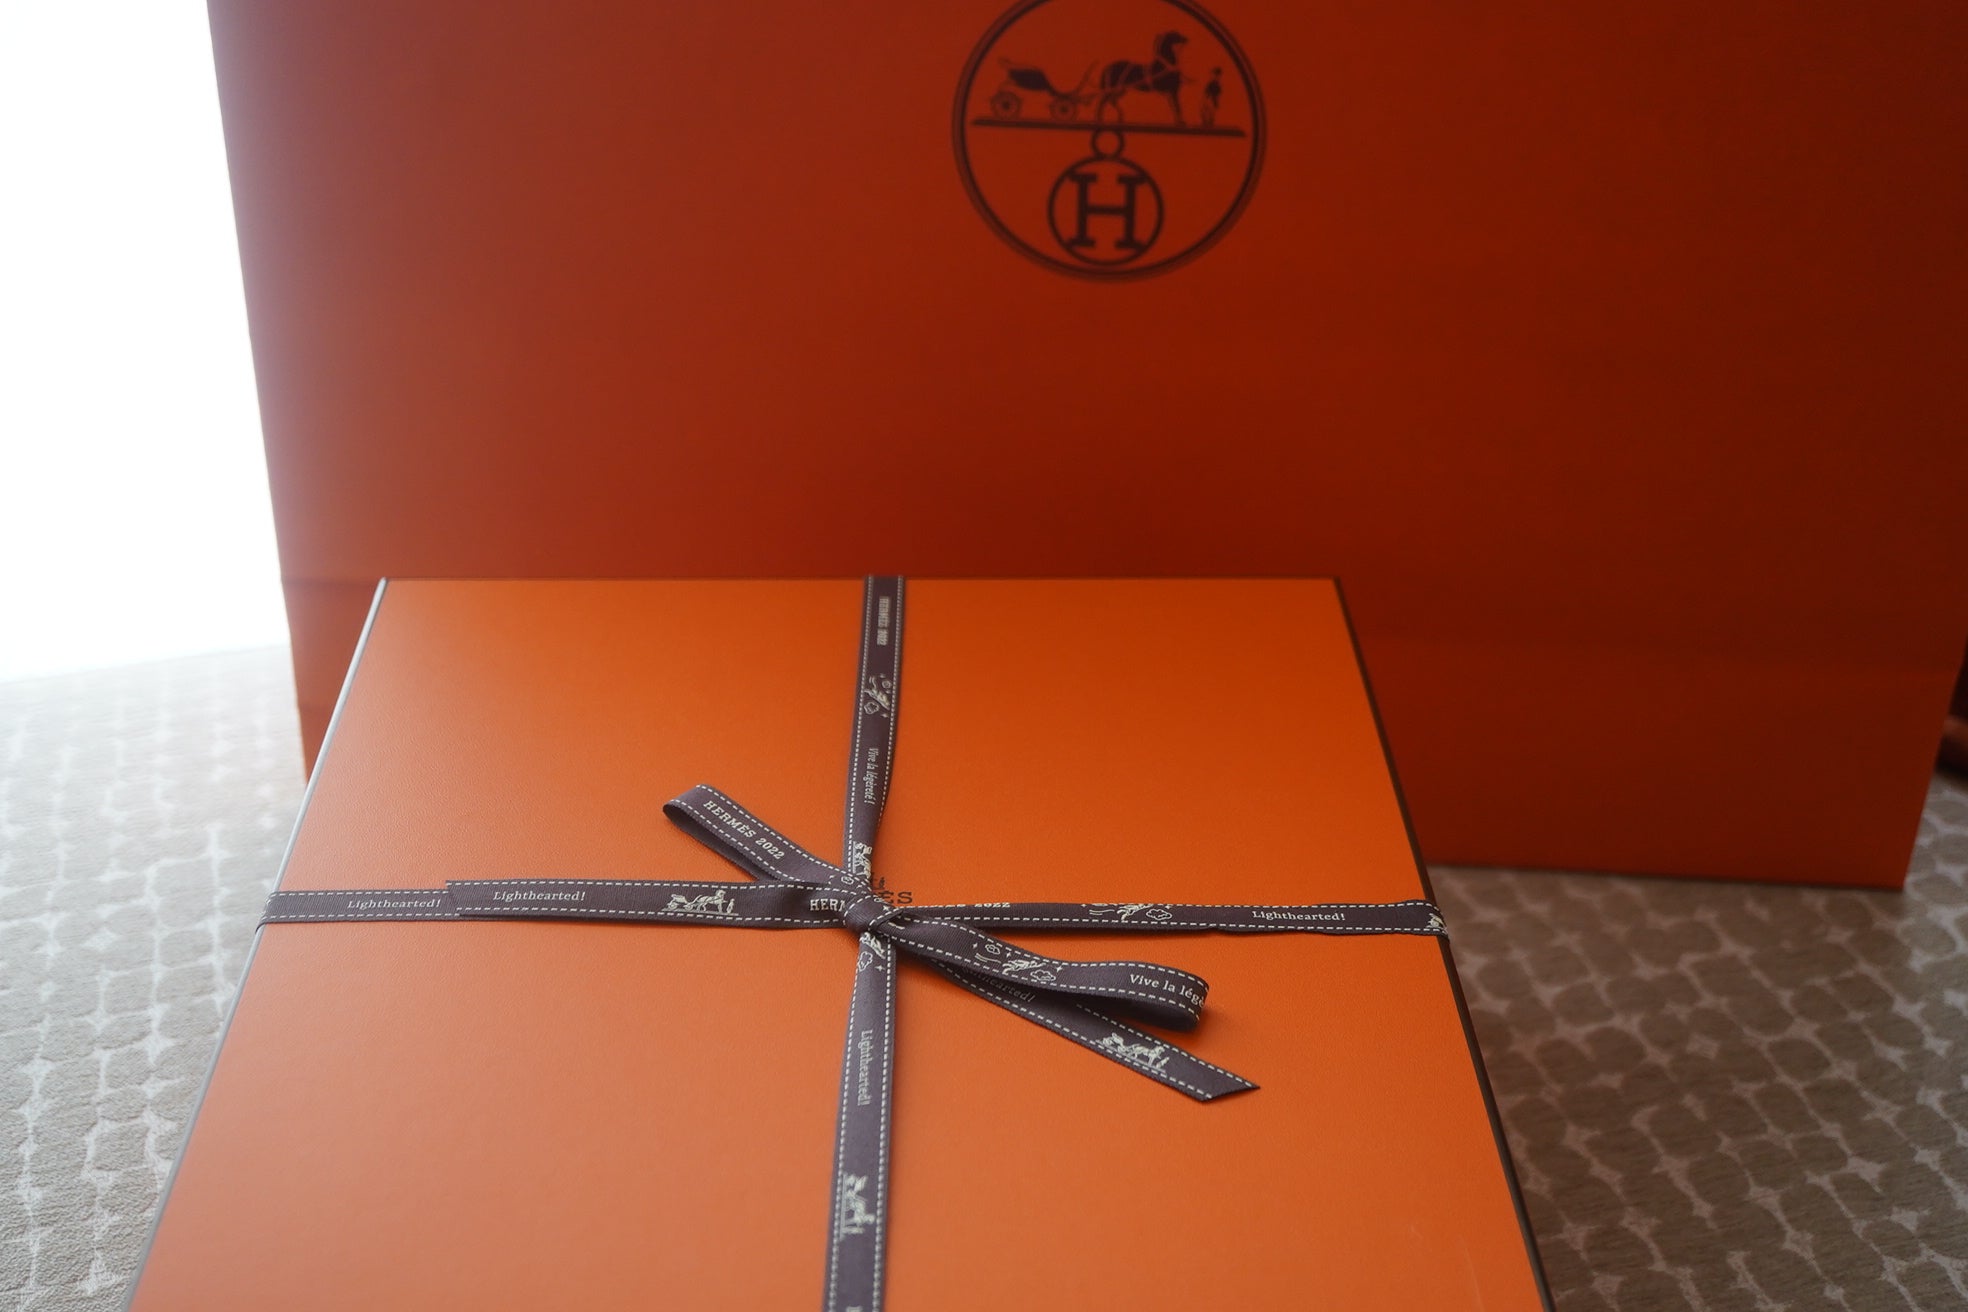 エルメス特別仕様のオレンジボックス | エルメス パトロール日記